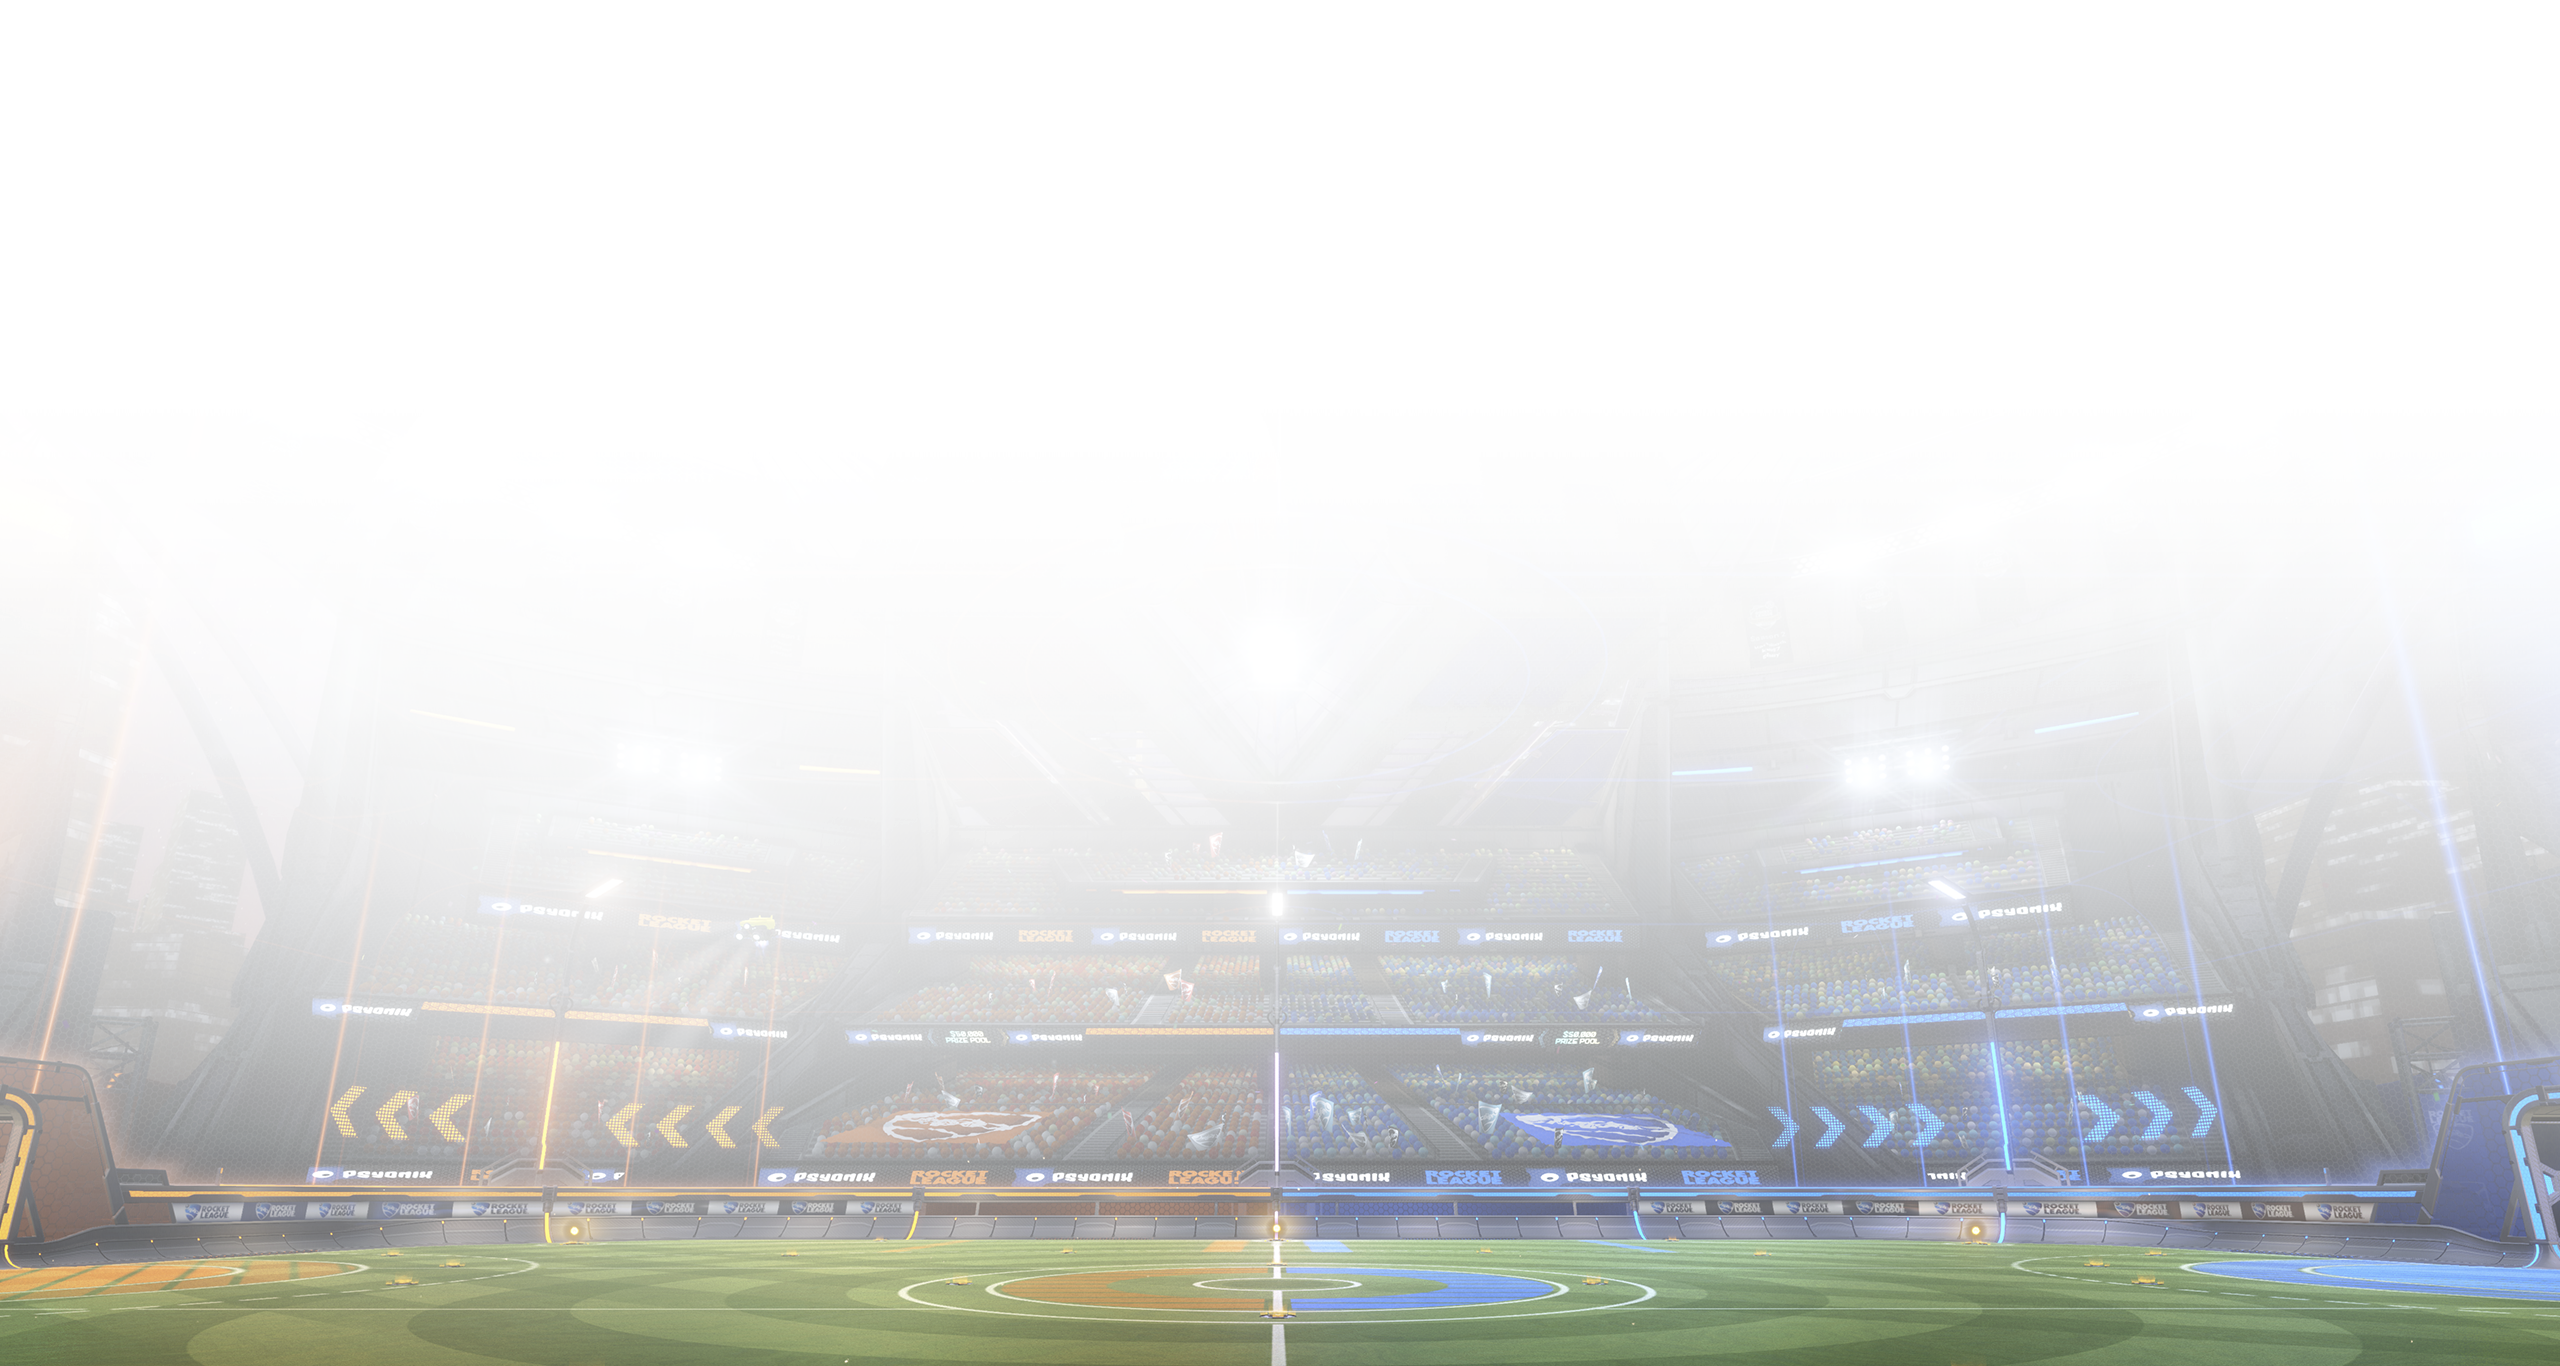 Rocket League - captura de tela mostrando campo de jogo cercado por arquibancadas